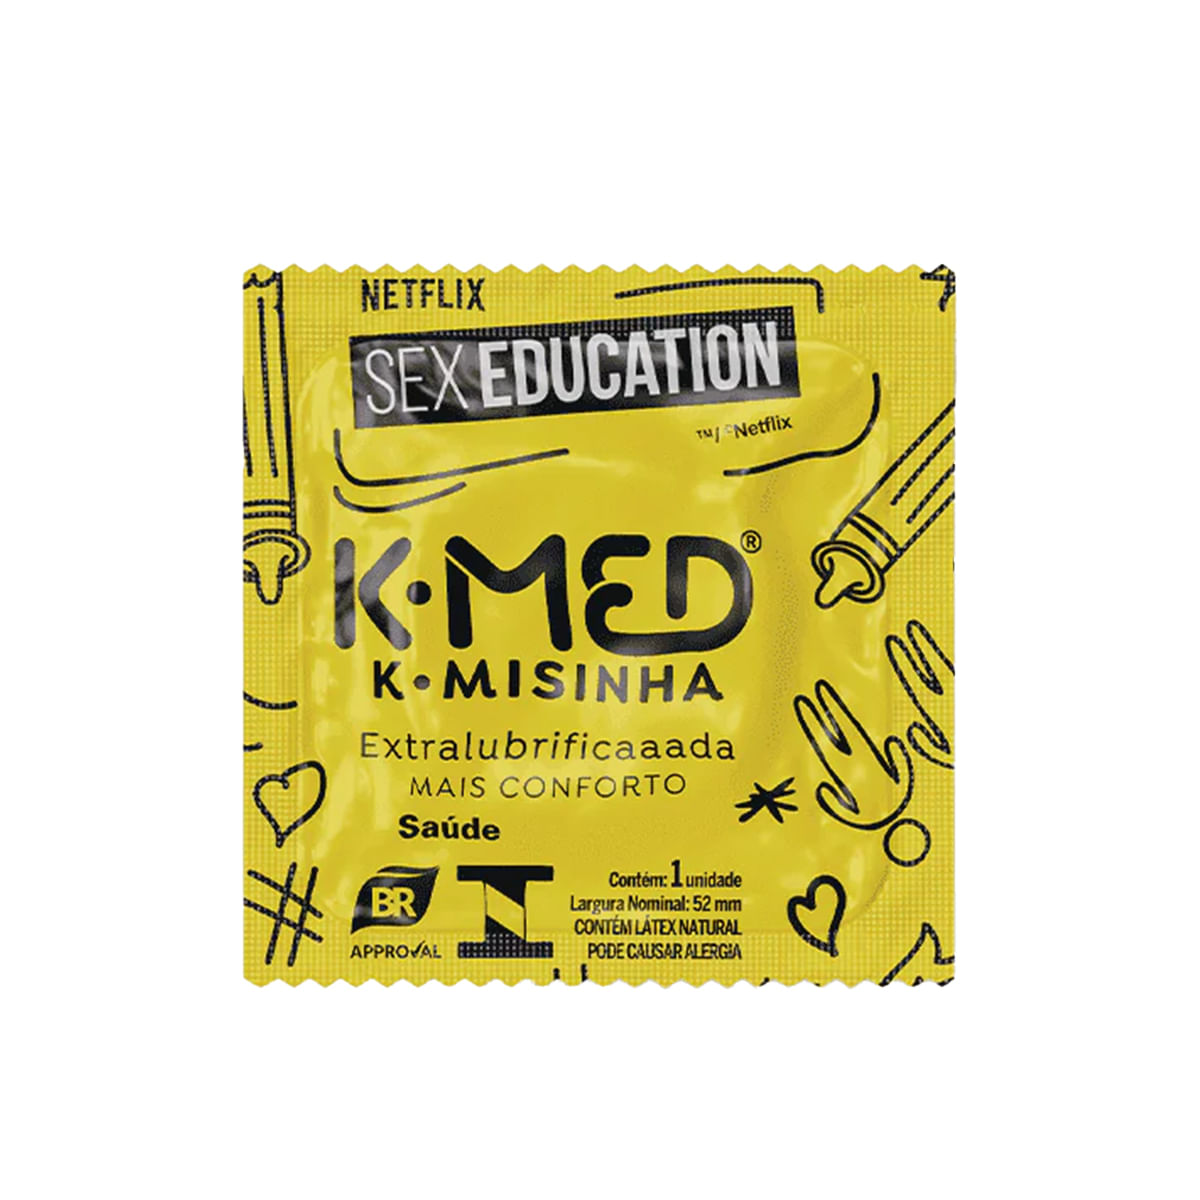 Preservativos K-Misinha Tradicional Sex Education com 3 Unidades Cimed